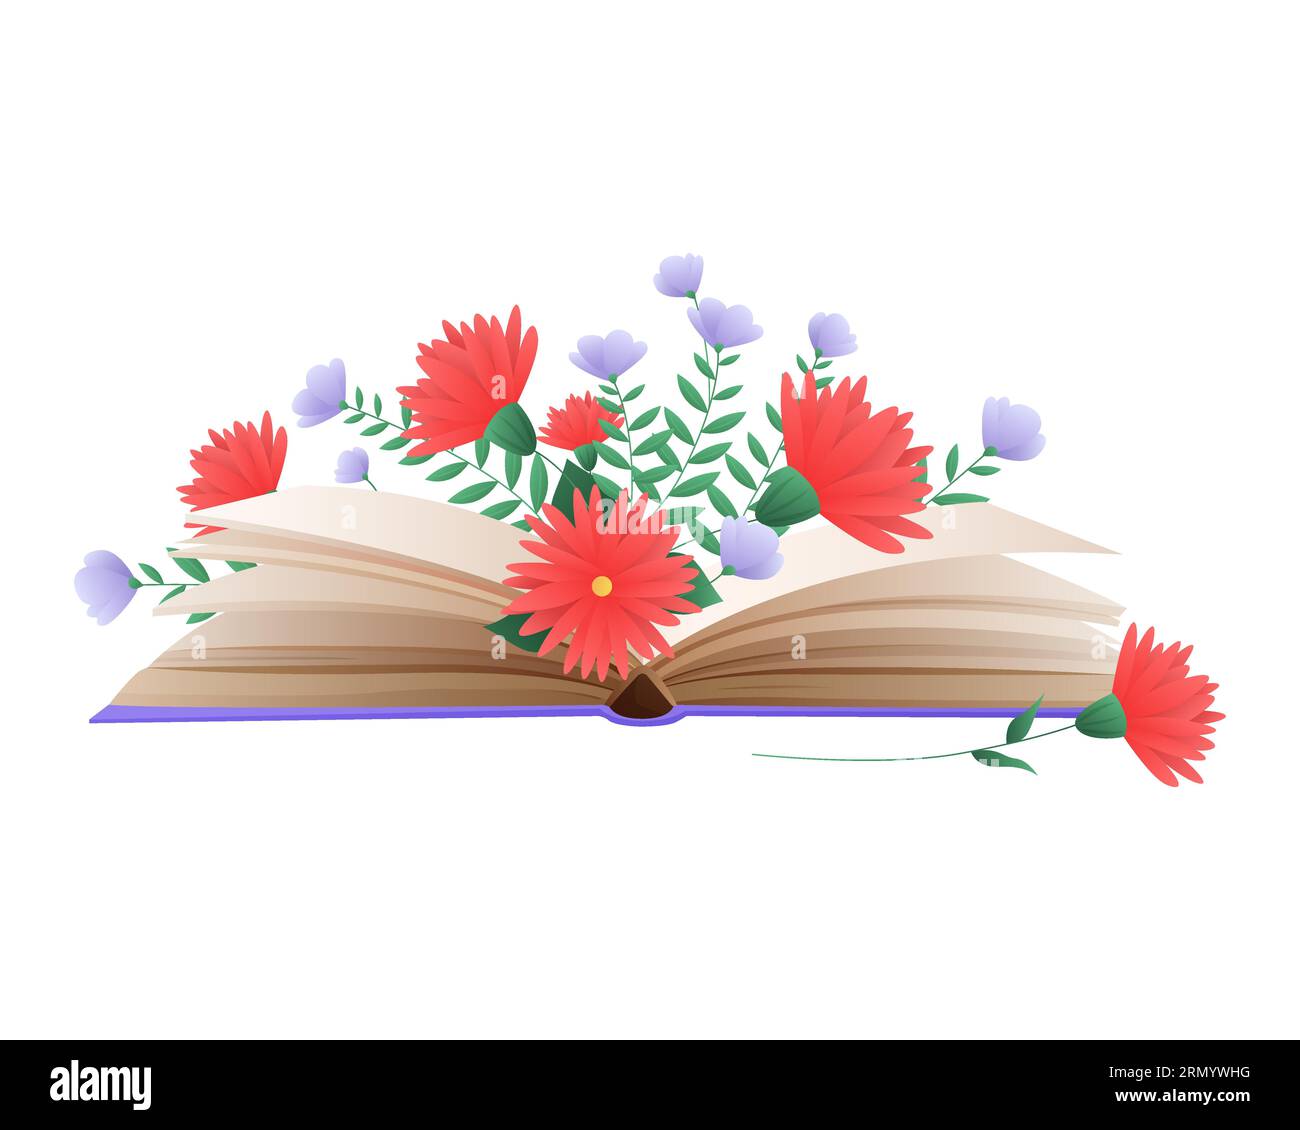 Livre ouvert avec des fleurs rouges et violettes. Illustration vectorielle de dessin animé de bibliothèque et de littérature Illustration de Vecteur